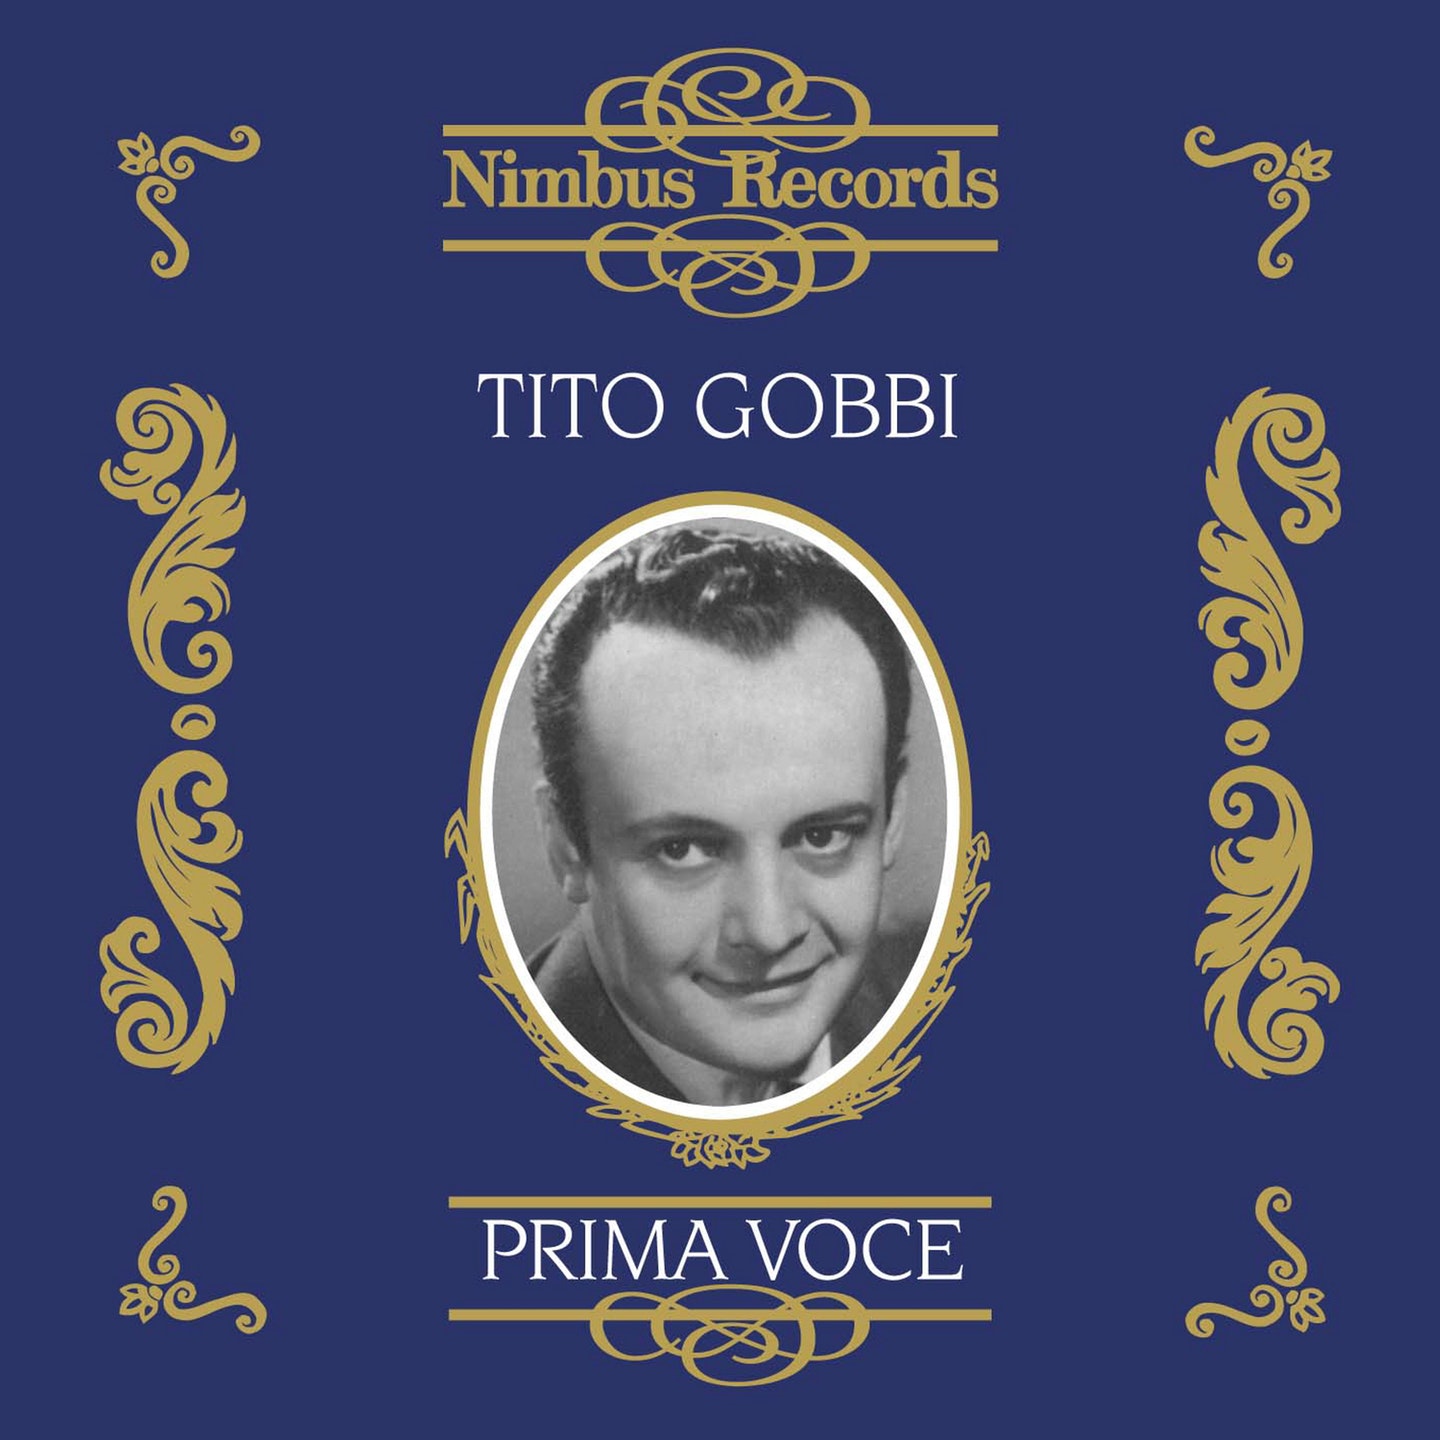 Tito Gobbi 1942-1953